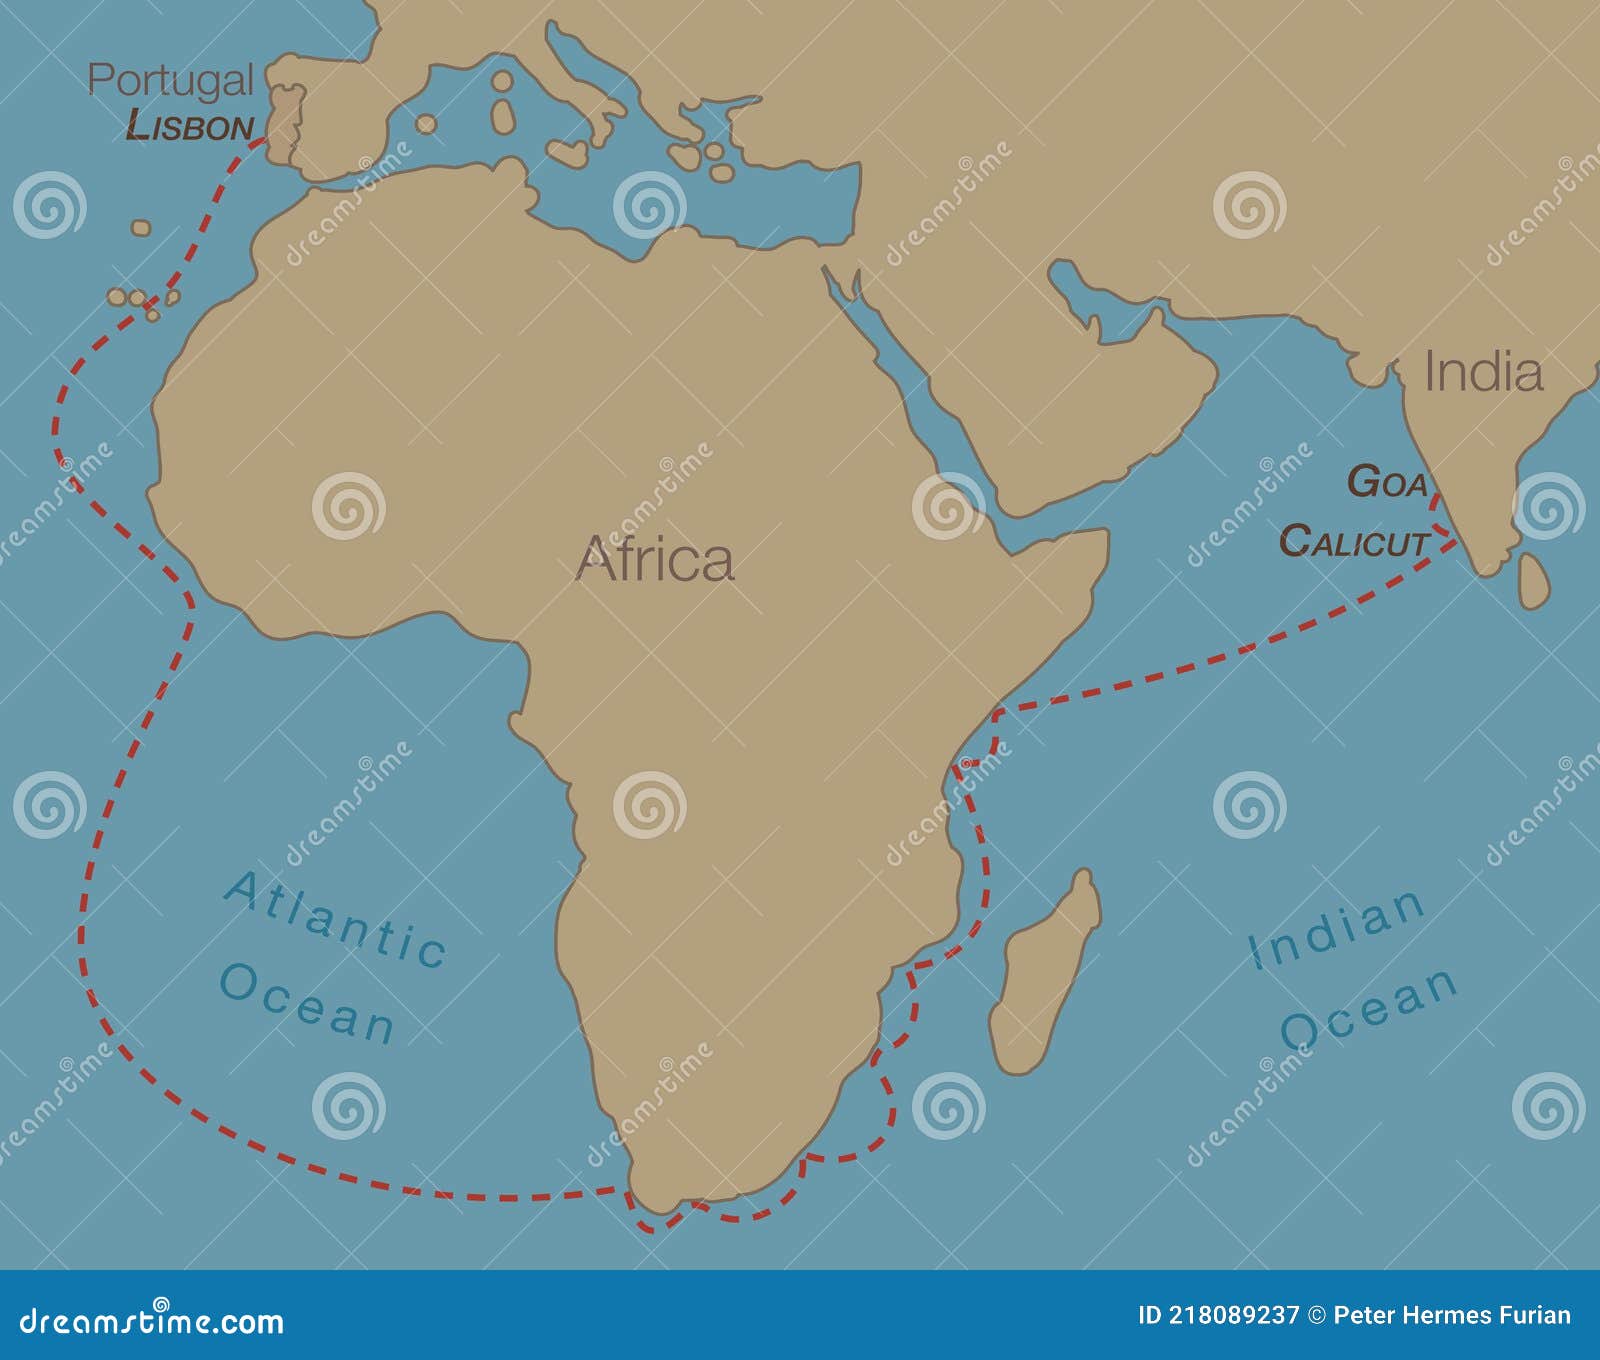 vasco da gama route india africa expedition map